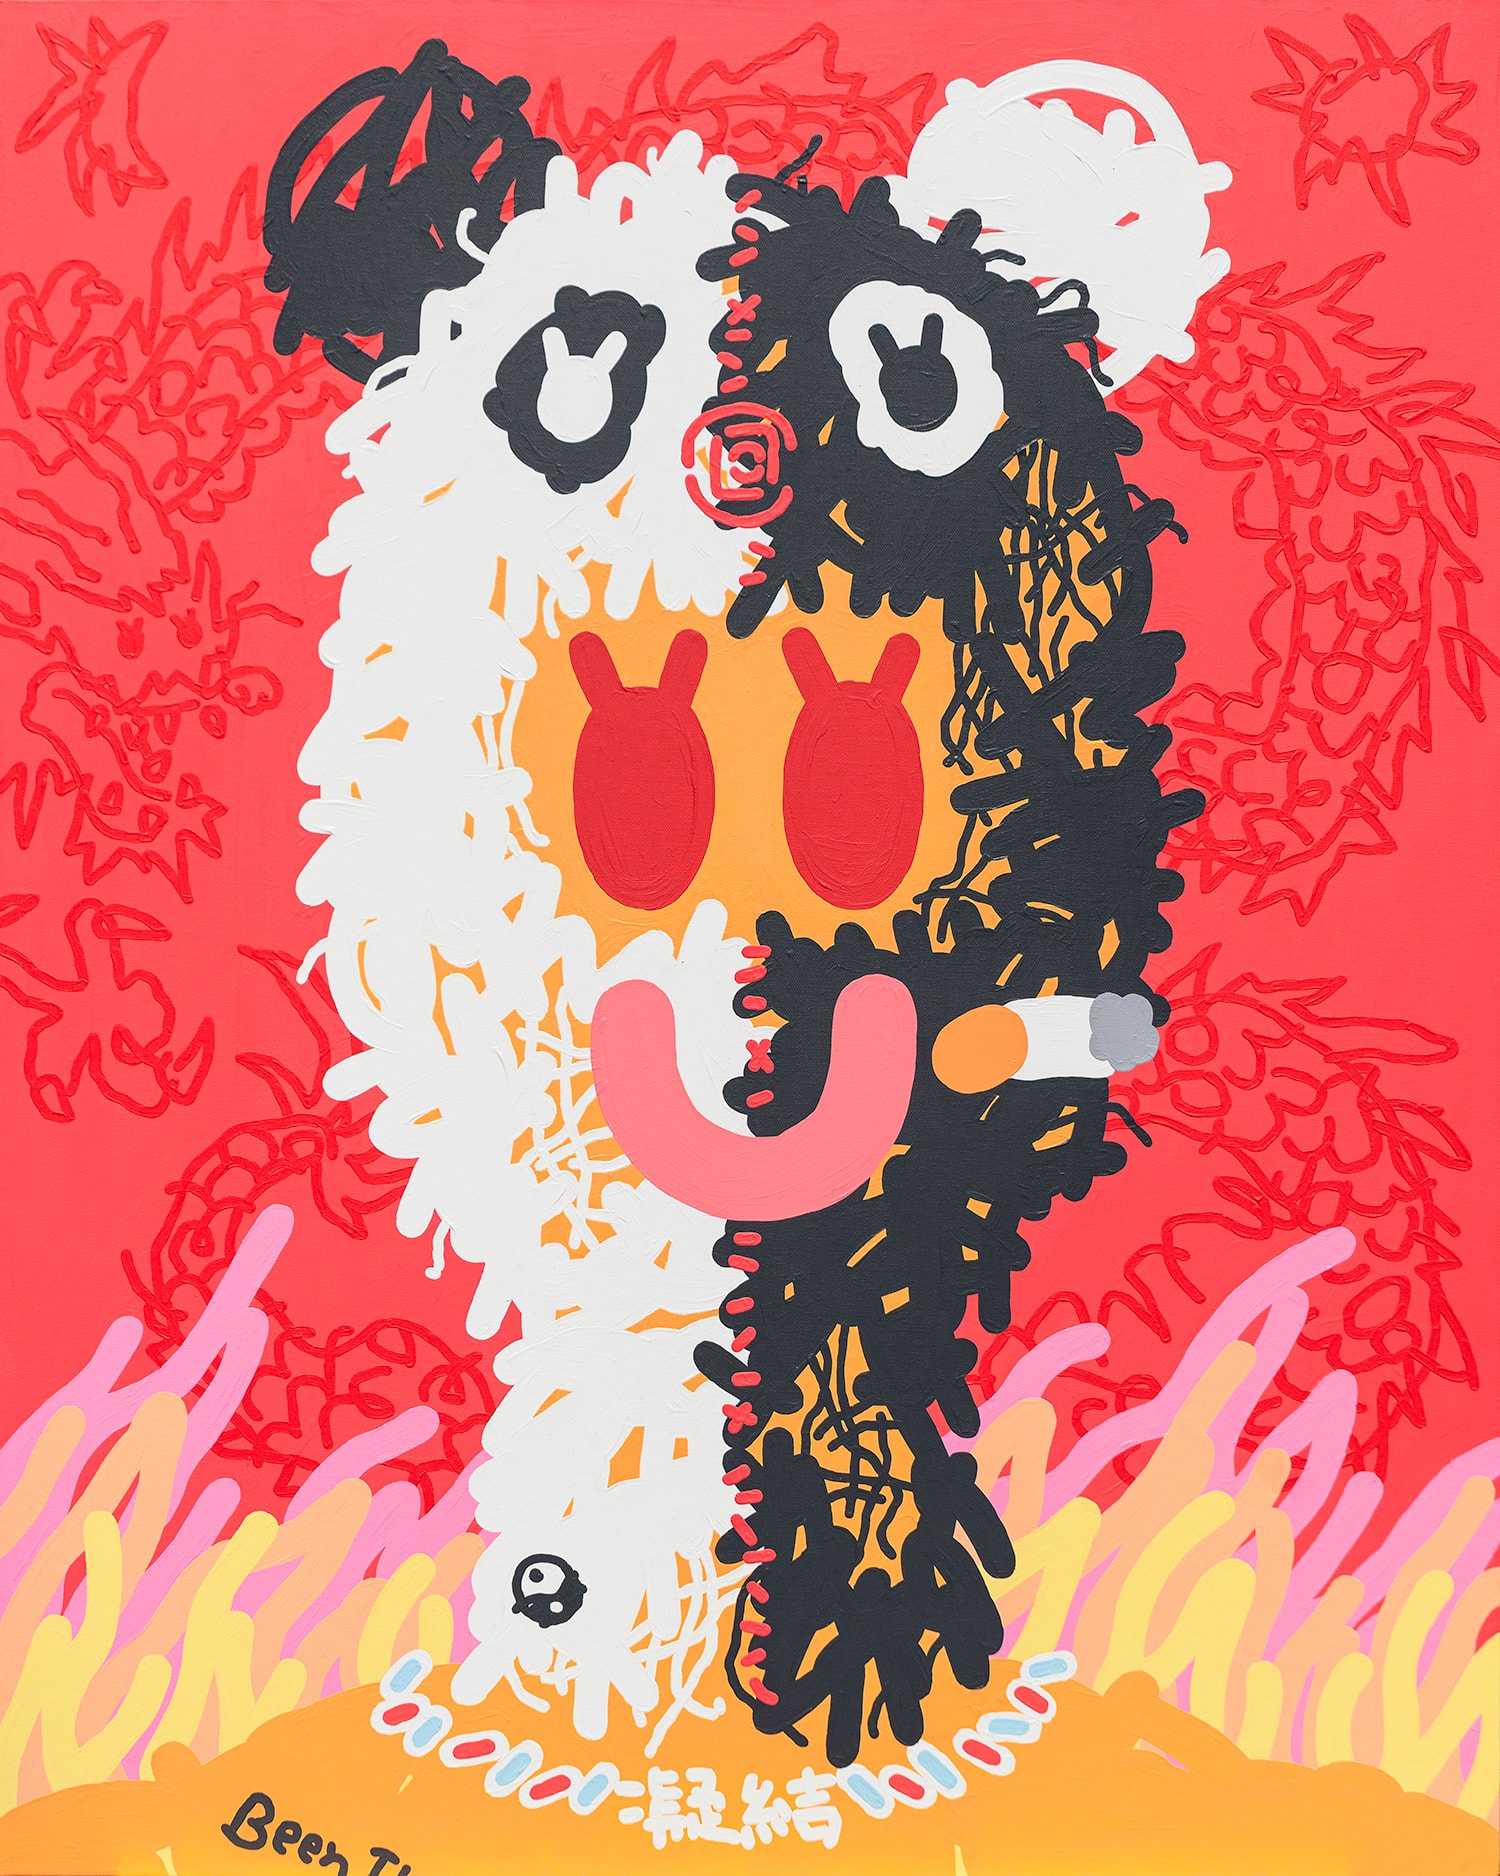 333 GALLERY 正式舉辦新銳藝術家朱晨維首場個展「IN FLAMES」